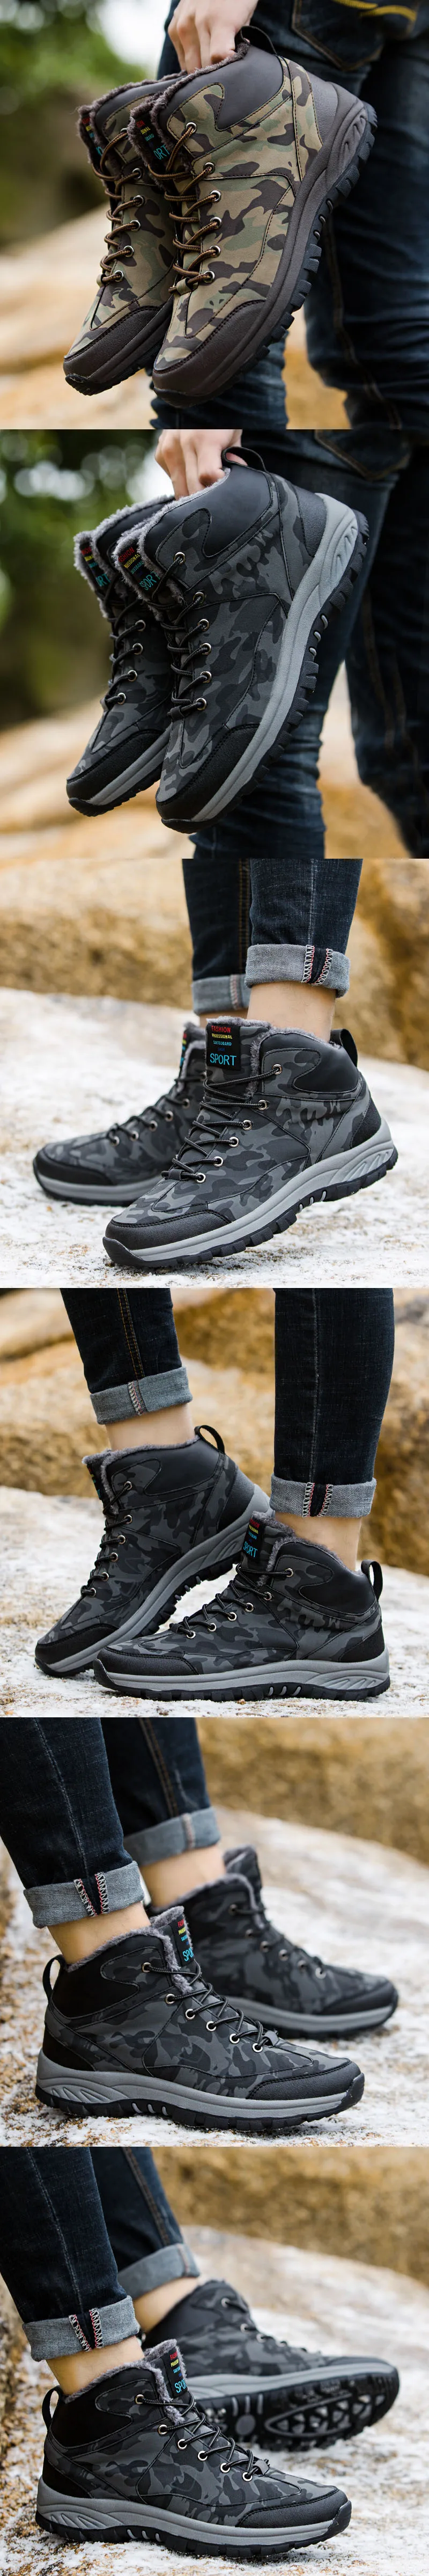 LINGGE/брендовые кожаные зимние водонепроницаемые мужские ботинки; зимние ботинки на меху; плюшевые теплые мужские повседневные ботинки; кроссовки; уличные ботинки